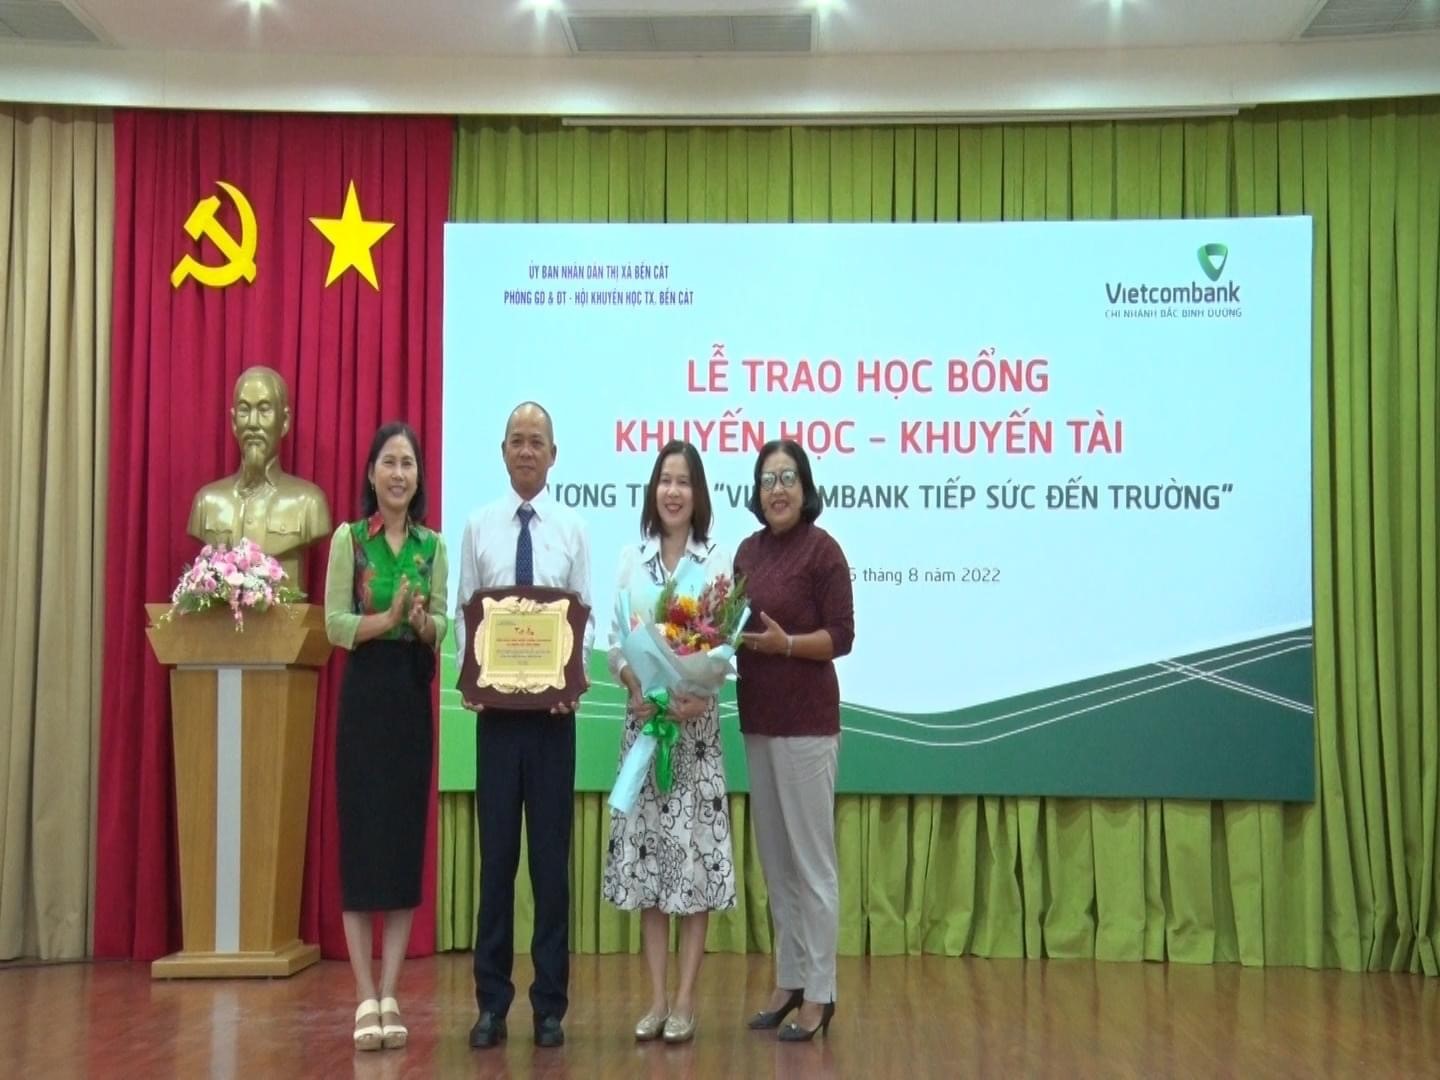 Vietcombank Bình Dương tổ chức lễ trao học bổng “ Vietcombank tiếp sức đến trường 2022”